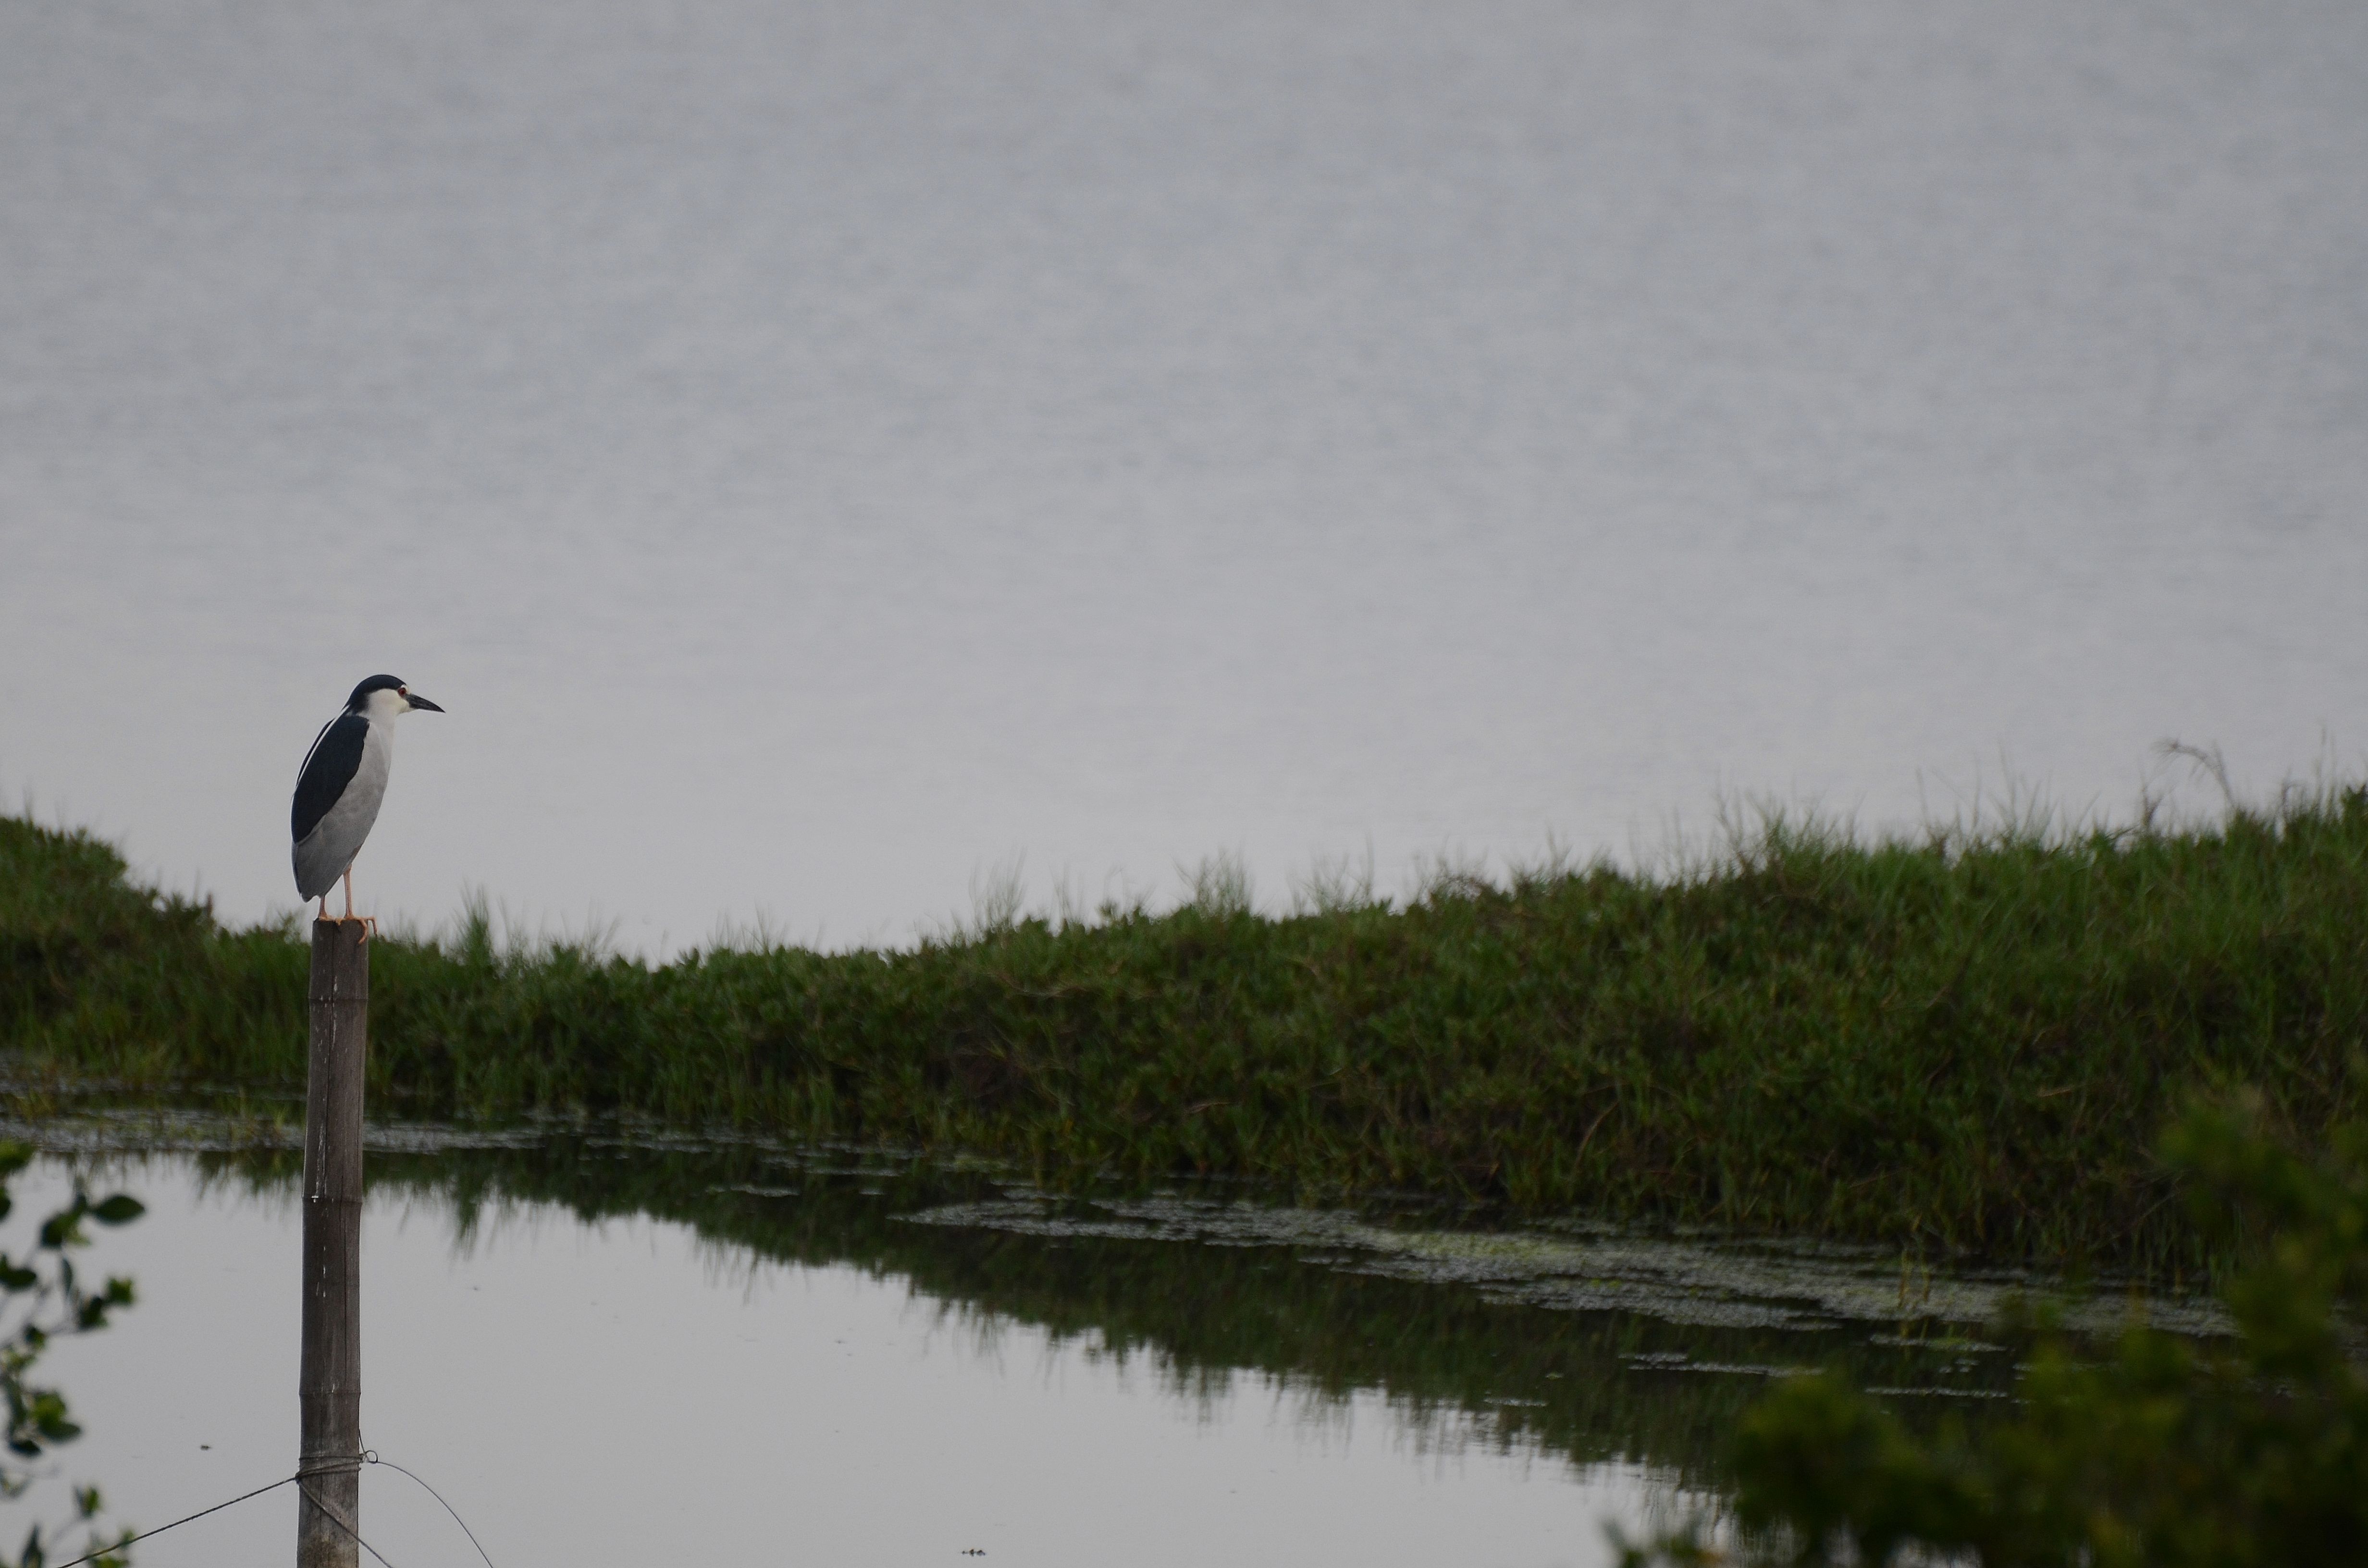 濕地孤獨的旅人看孤獨的鳥兒。(圖/受訪者提供)